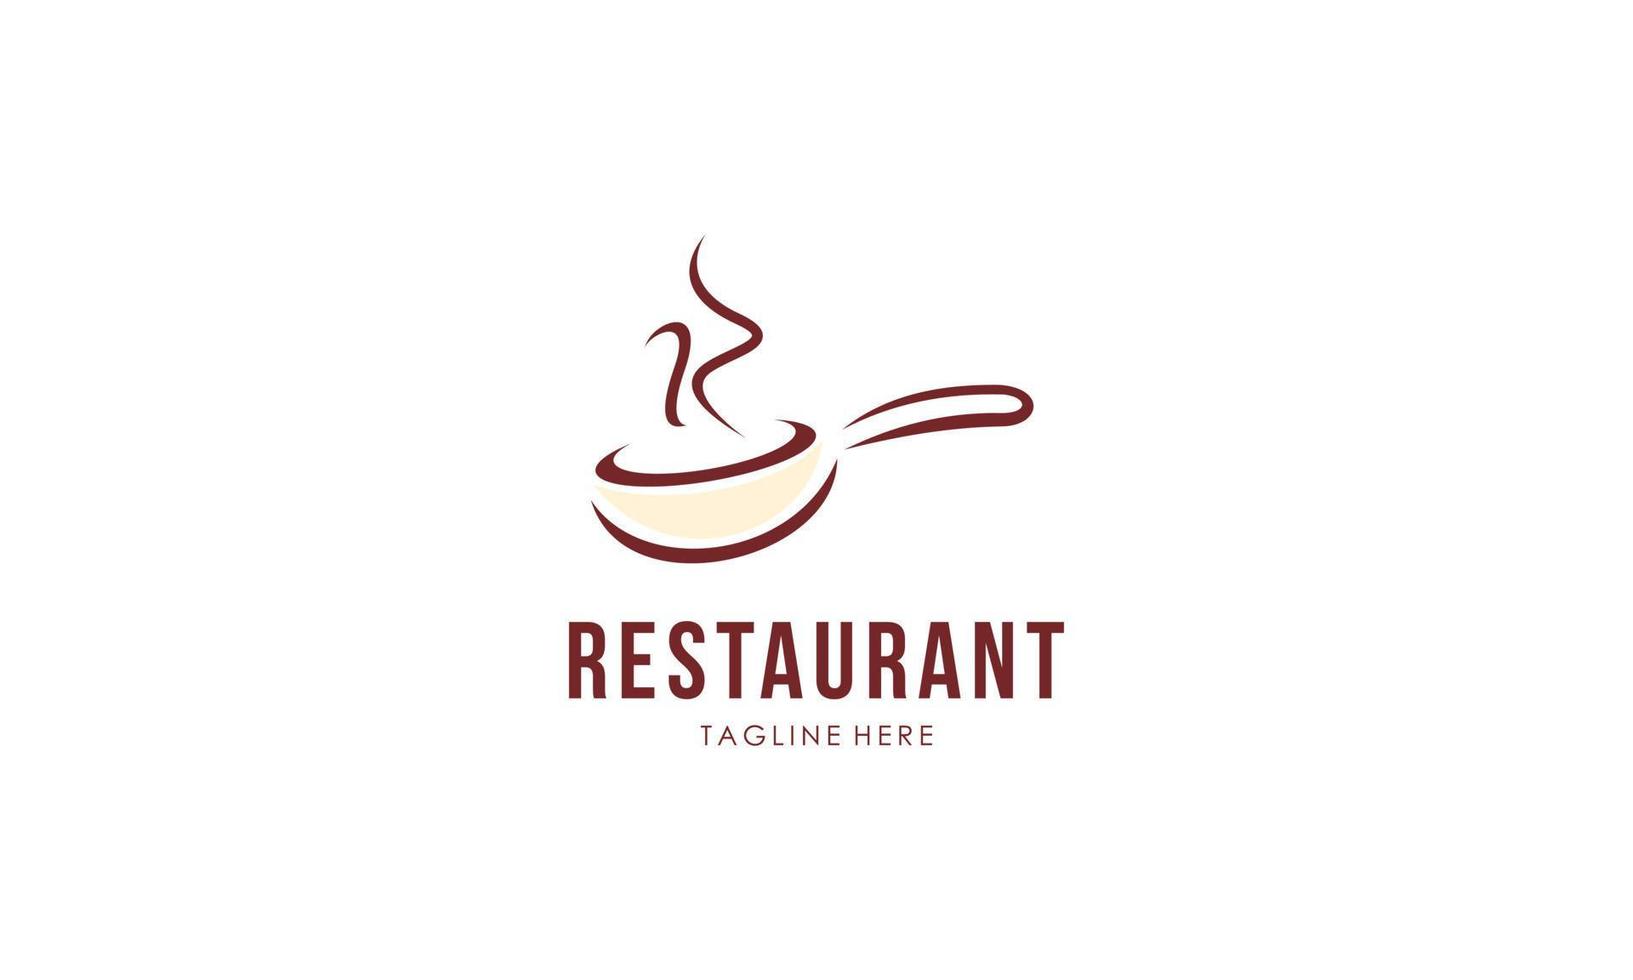 vetor de modelo de design de logotipo de restaurante